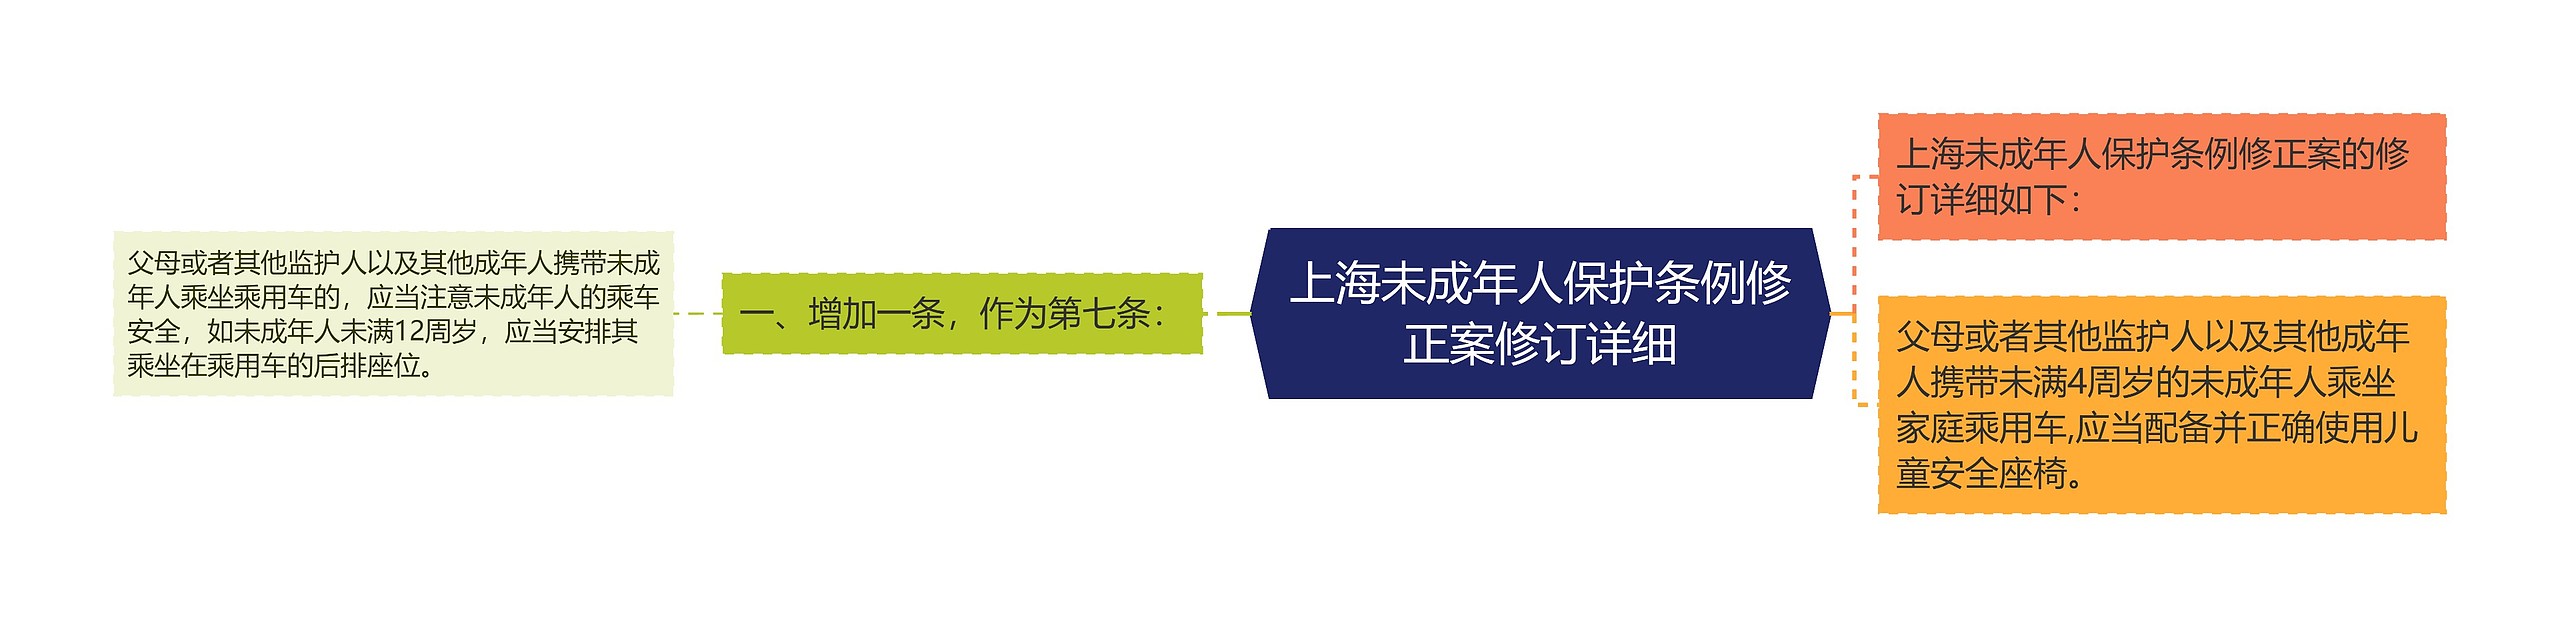 上海未成年人保护条例修正案修订详细